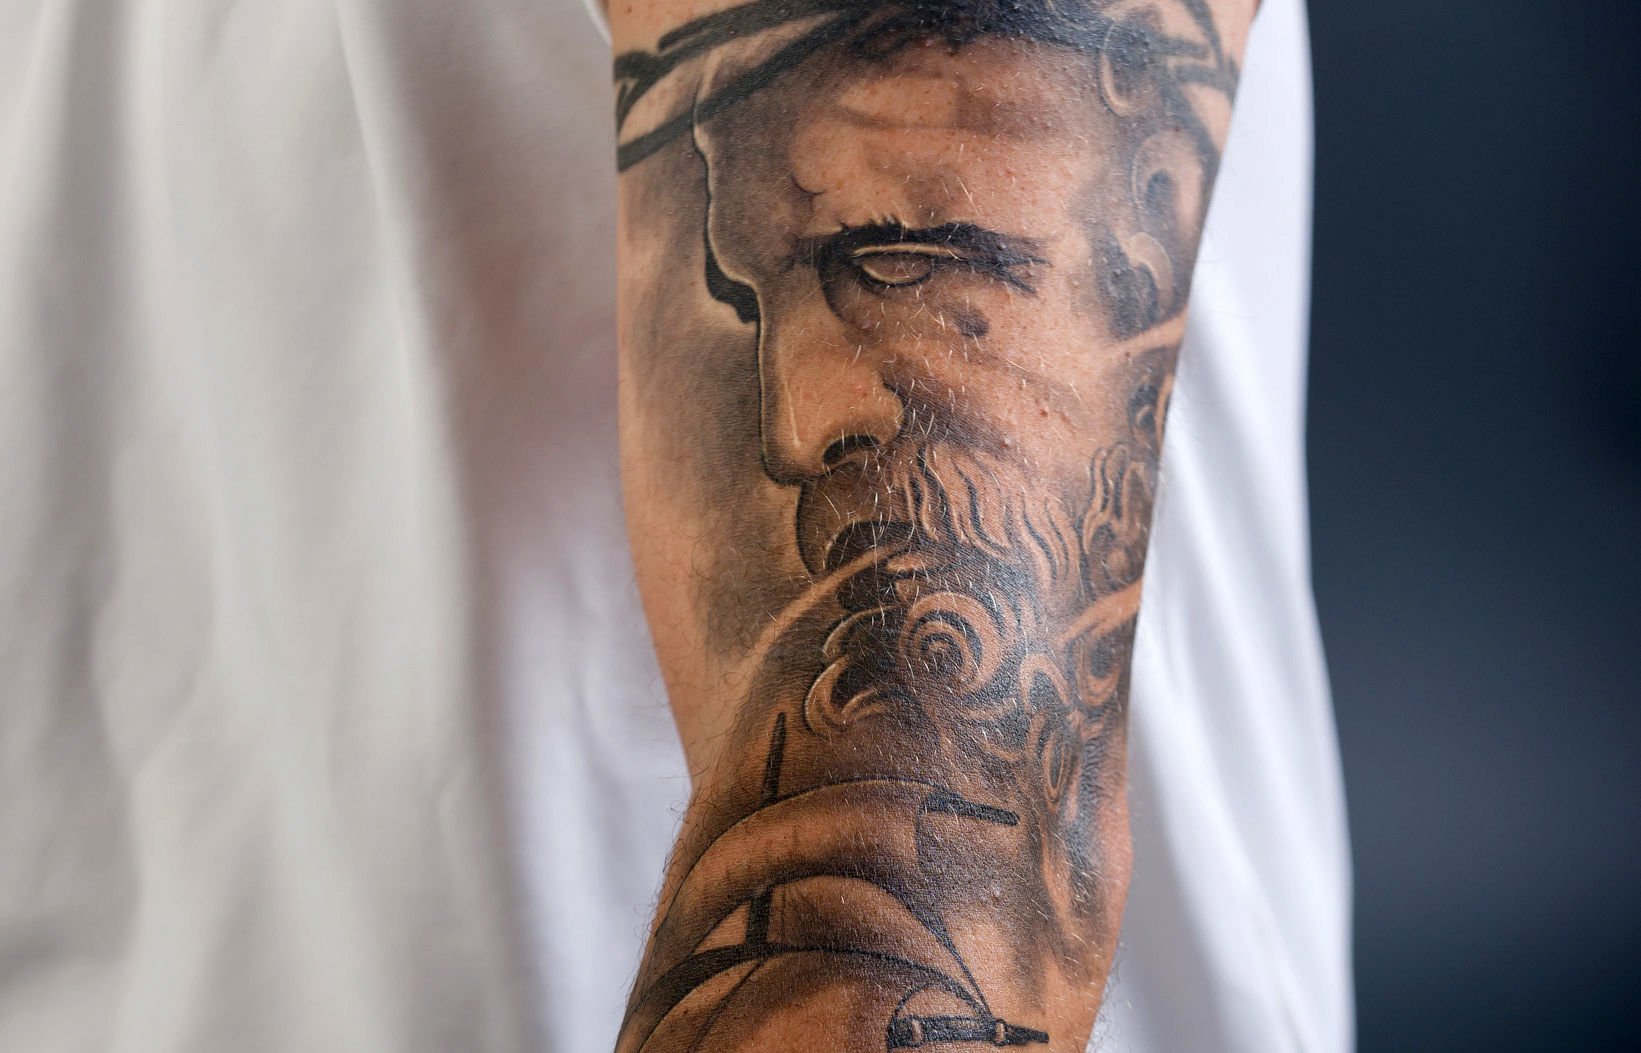 Tattoo sayings: Yli 2 111 757 rojaltivapaata lisensoitavaa arkistokuvitusta  ja piirrosta | Shutterstock